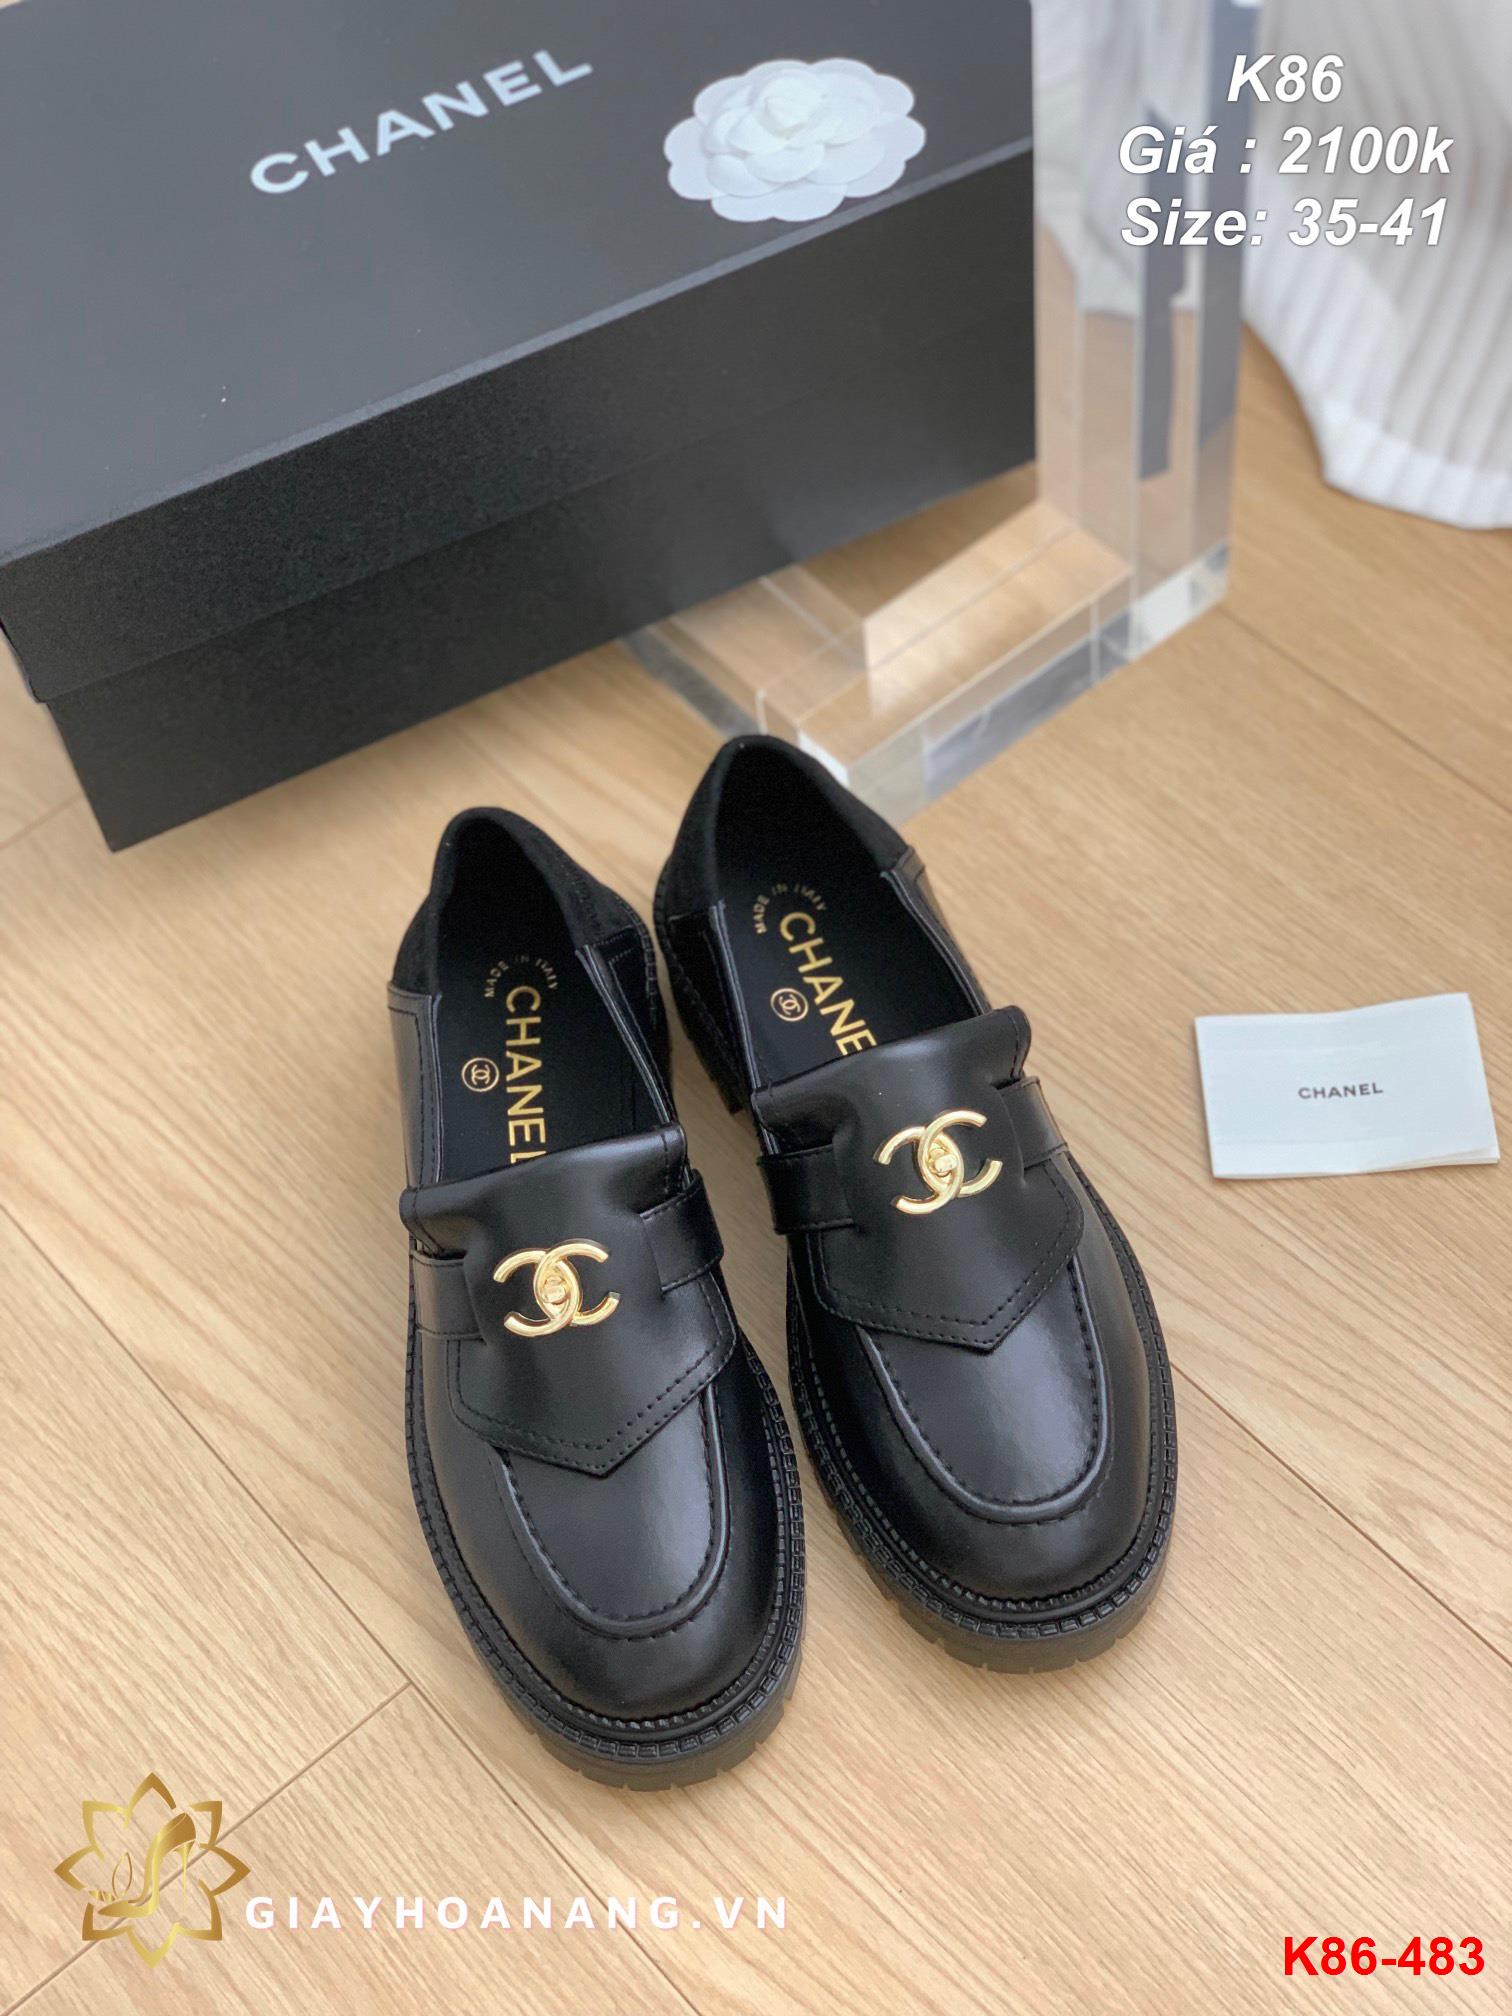 K86-483 Chanel giày lười siêu cấp